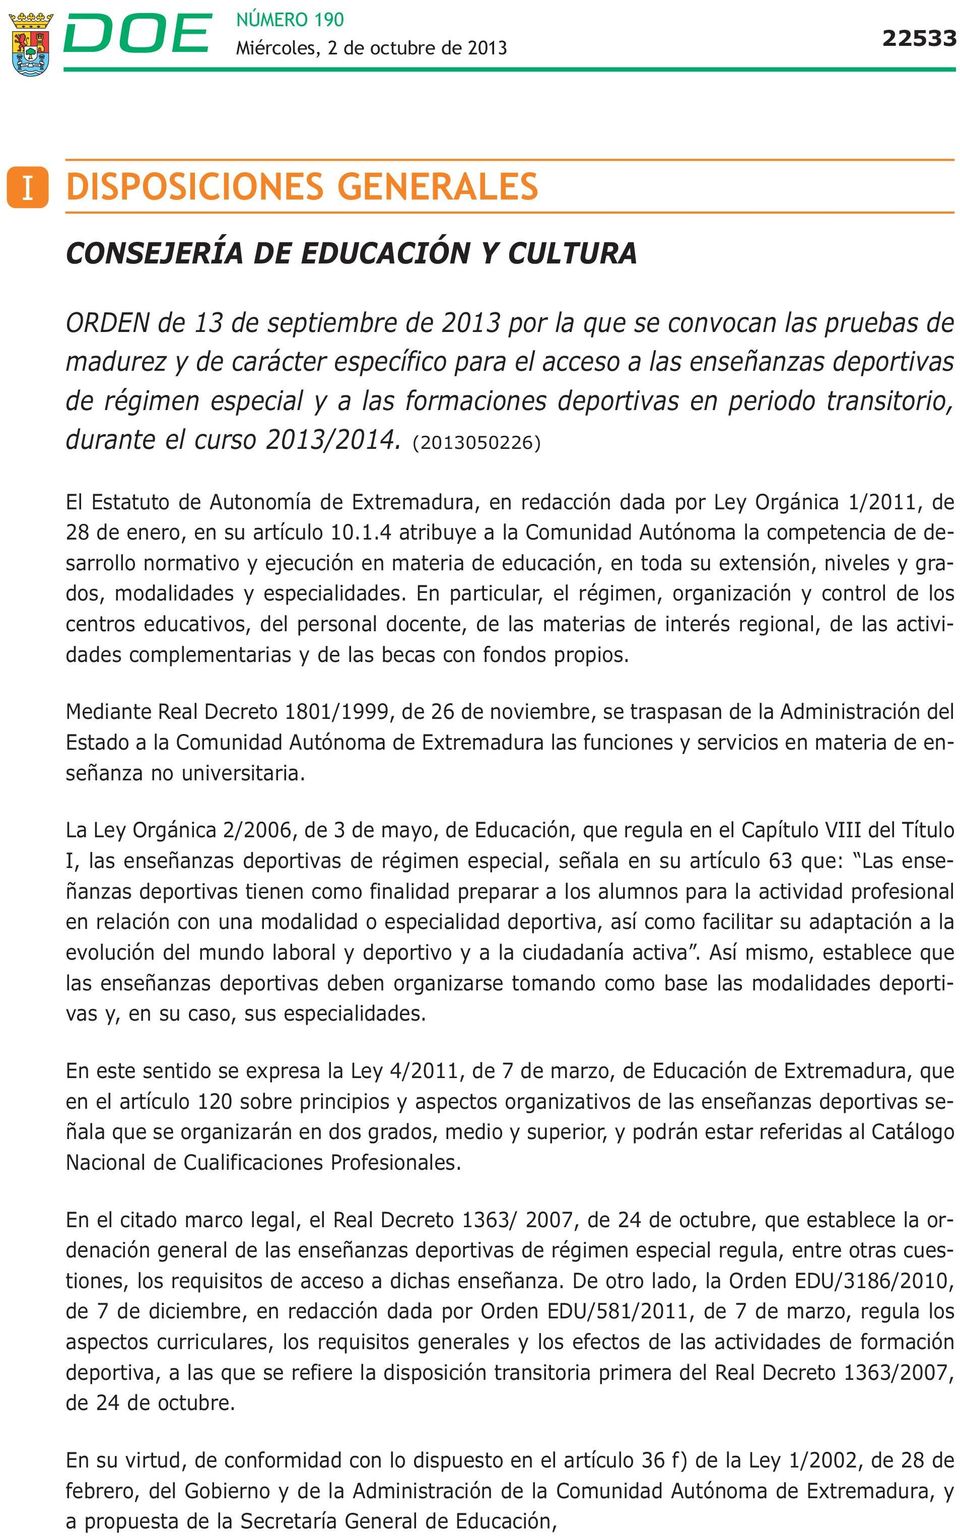 (2013050226) El Estatuto de Autonomía de Extremadura, en redacción dada por Ley Orgánica 1/2011, de 28 de enero, en su artículo 10.1.4 atribuye a la Comunidad Autónoma la competencia de desarrollo normativo y ejecución en materia de educación, en toda su extensión, niveles y grados, modalidades y especialidades.